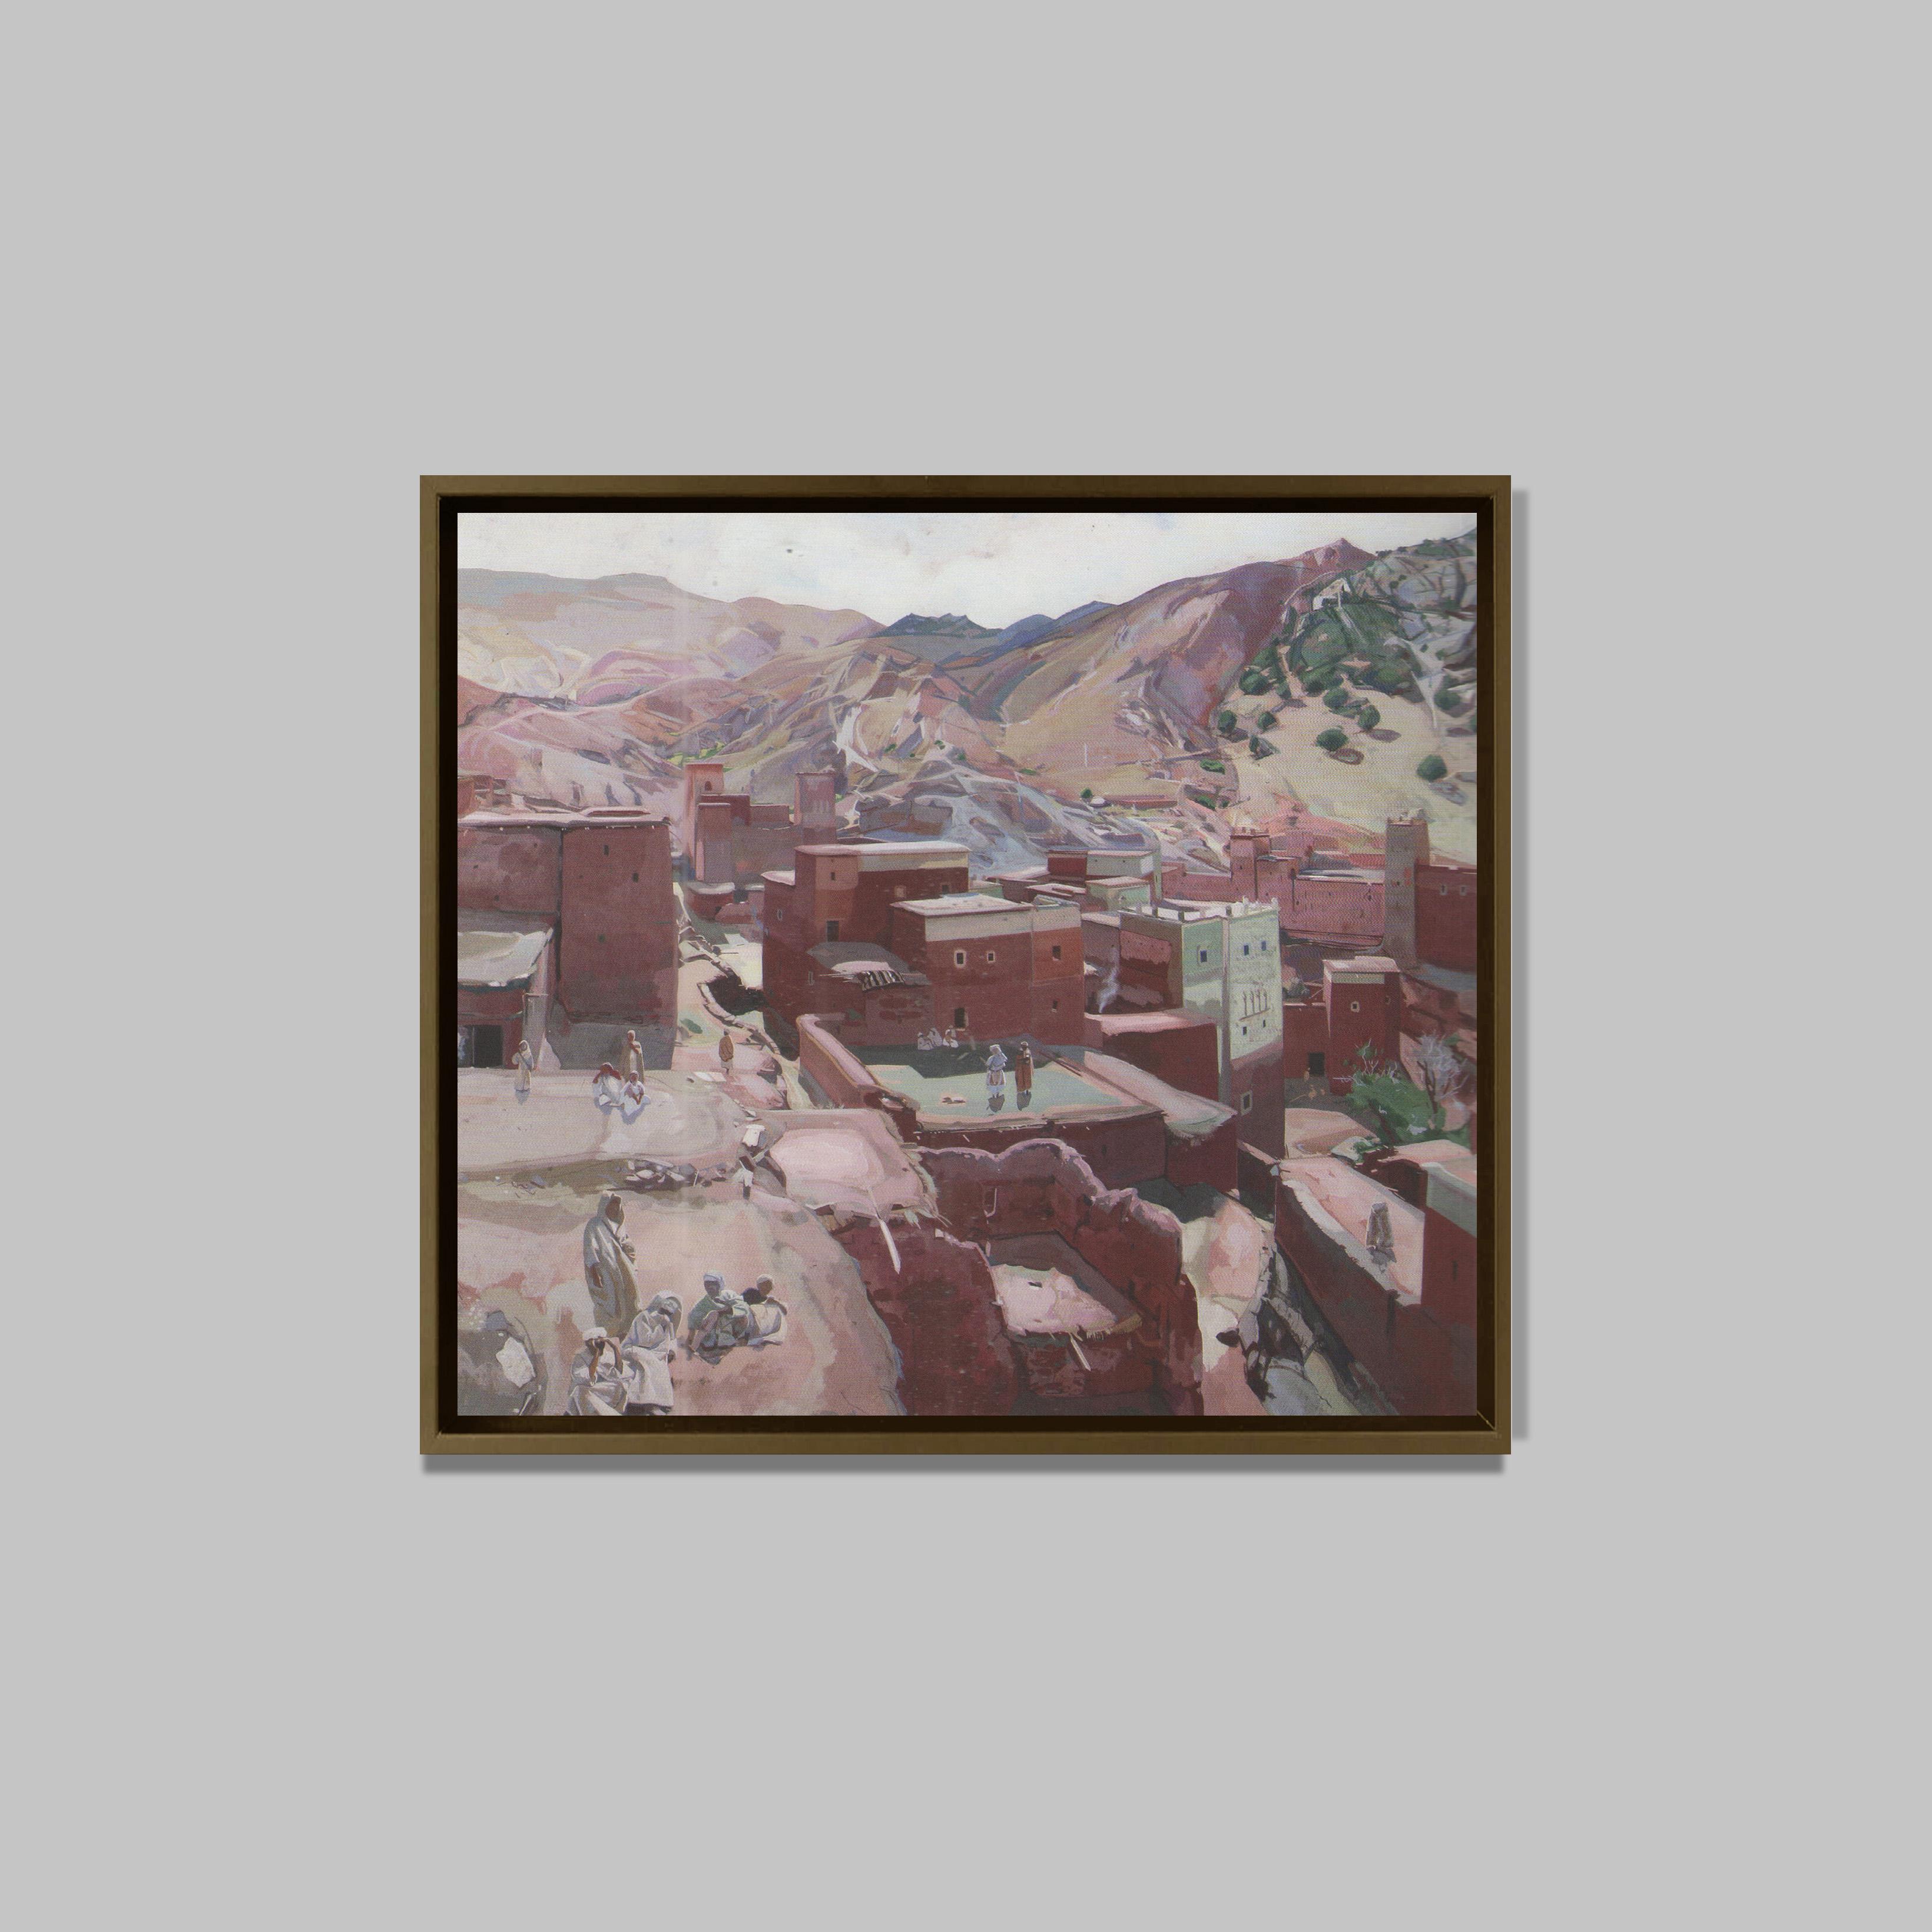 Kasbah à lnemiter, 1959
Huile et technique mixte sur panneau
84 x 90 cm